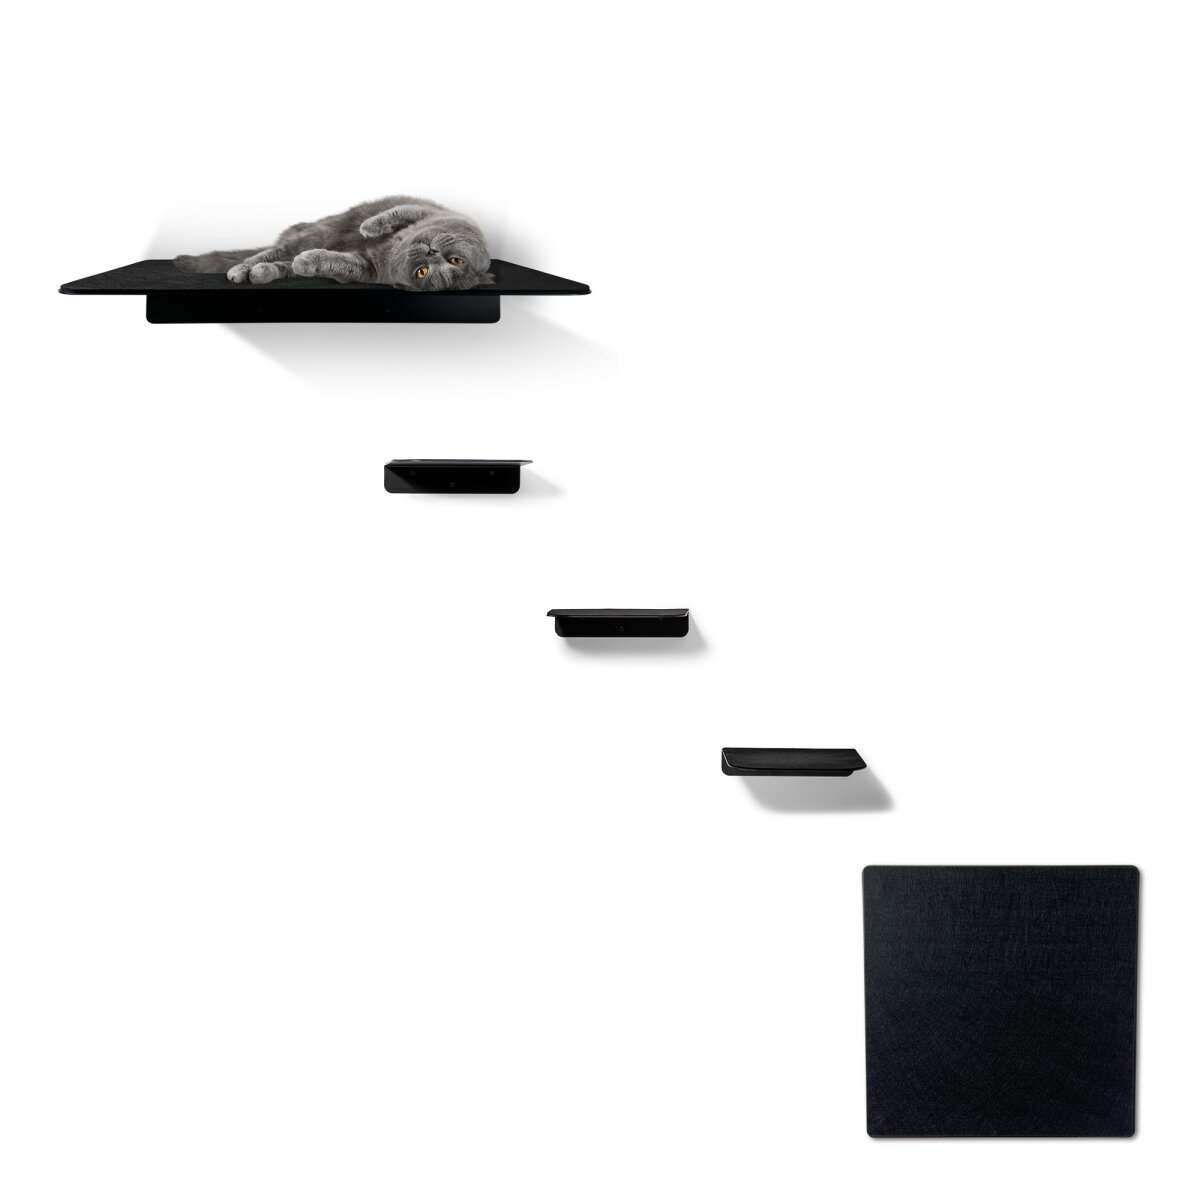 STYA Katzen Kletterwand WL 300 | Set Eleganz Wandliege XXL | Design Wandmöbel aus Metall + Filz - Katzengerecht, modern und minimalistisch, Premium Qualität